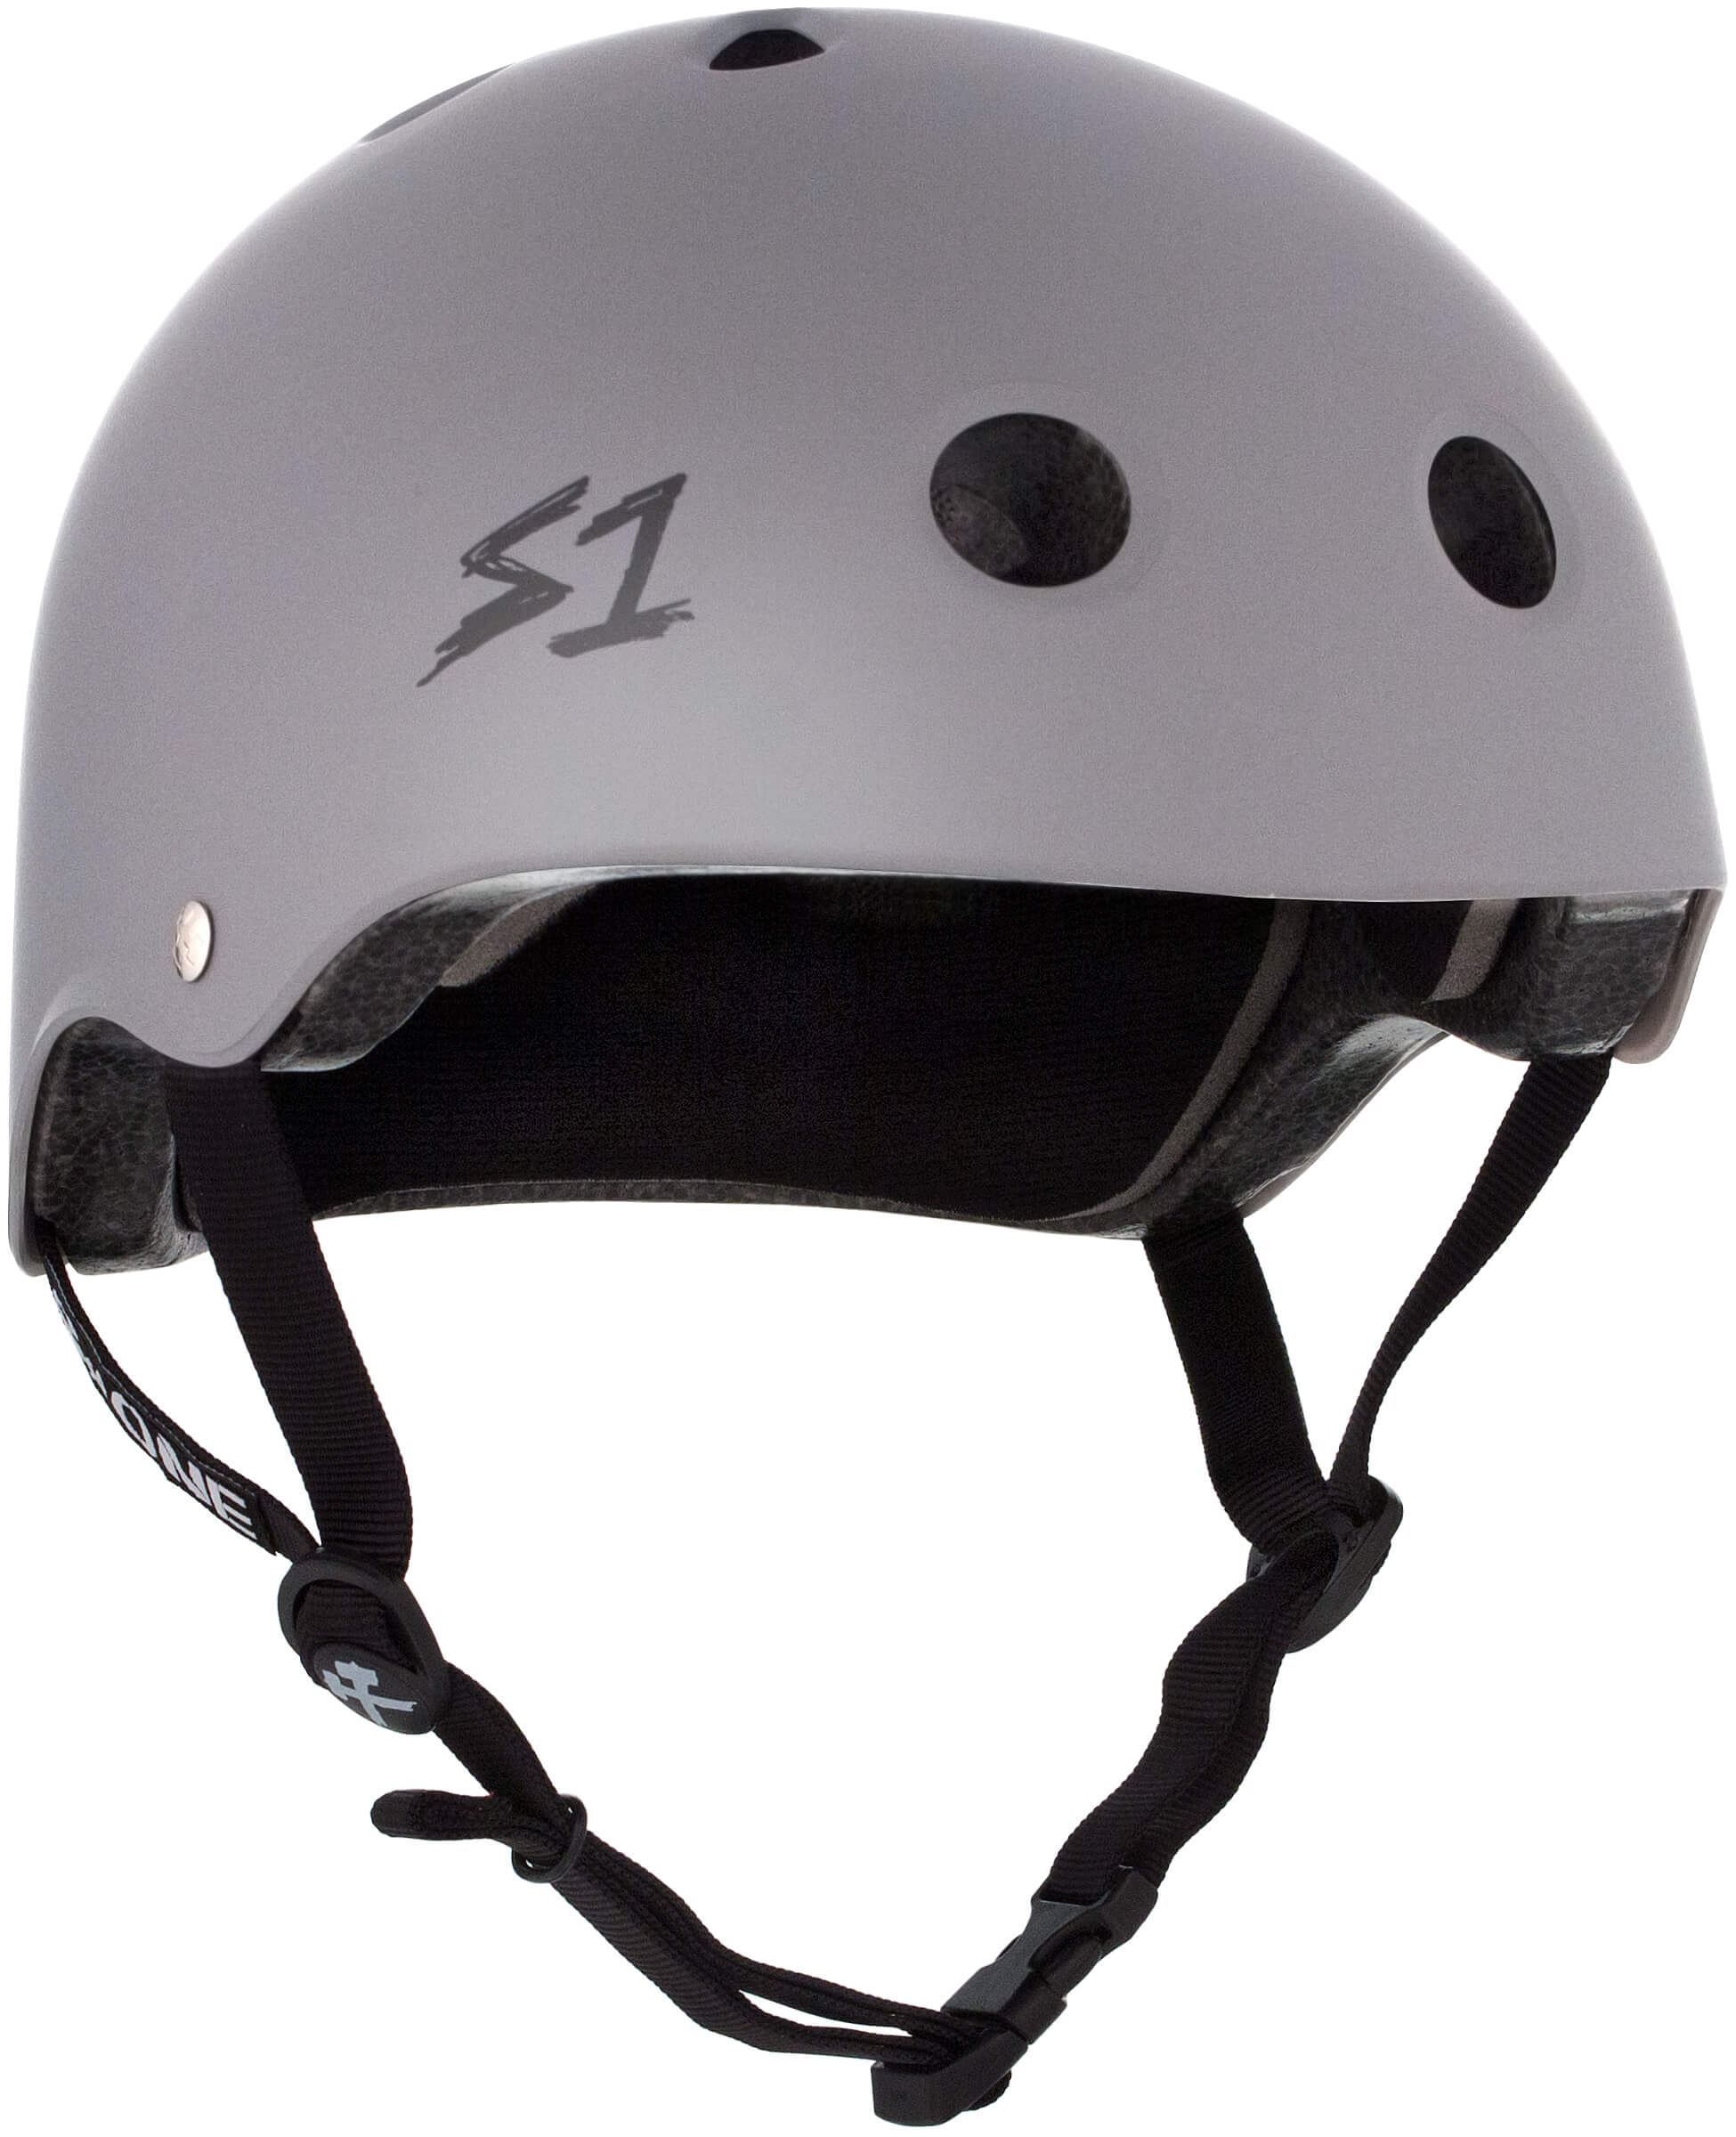 S1 Lifer Helmet - Casque Gris clair mât avec sangles noires